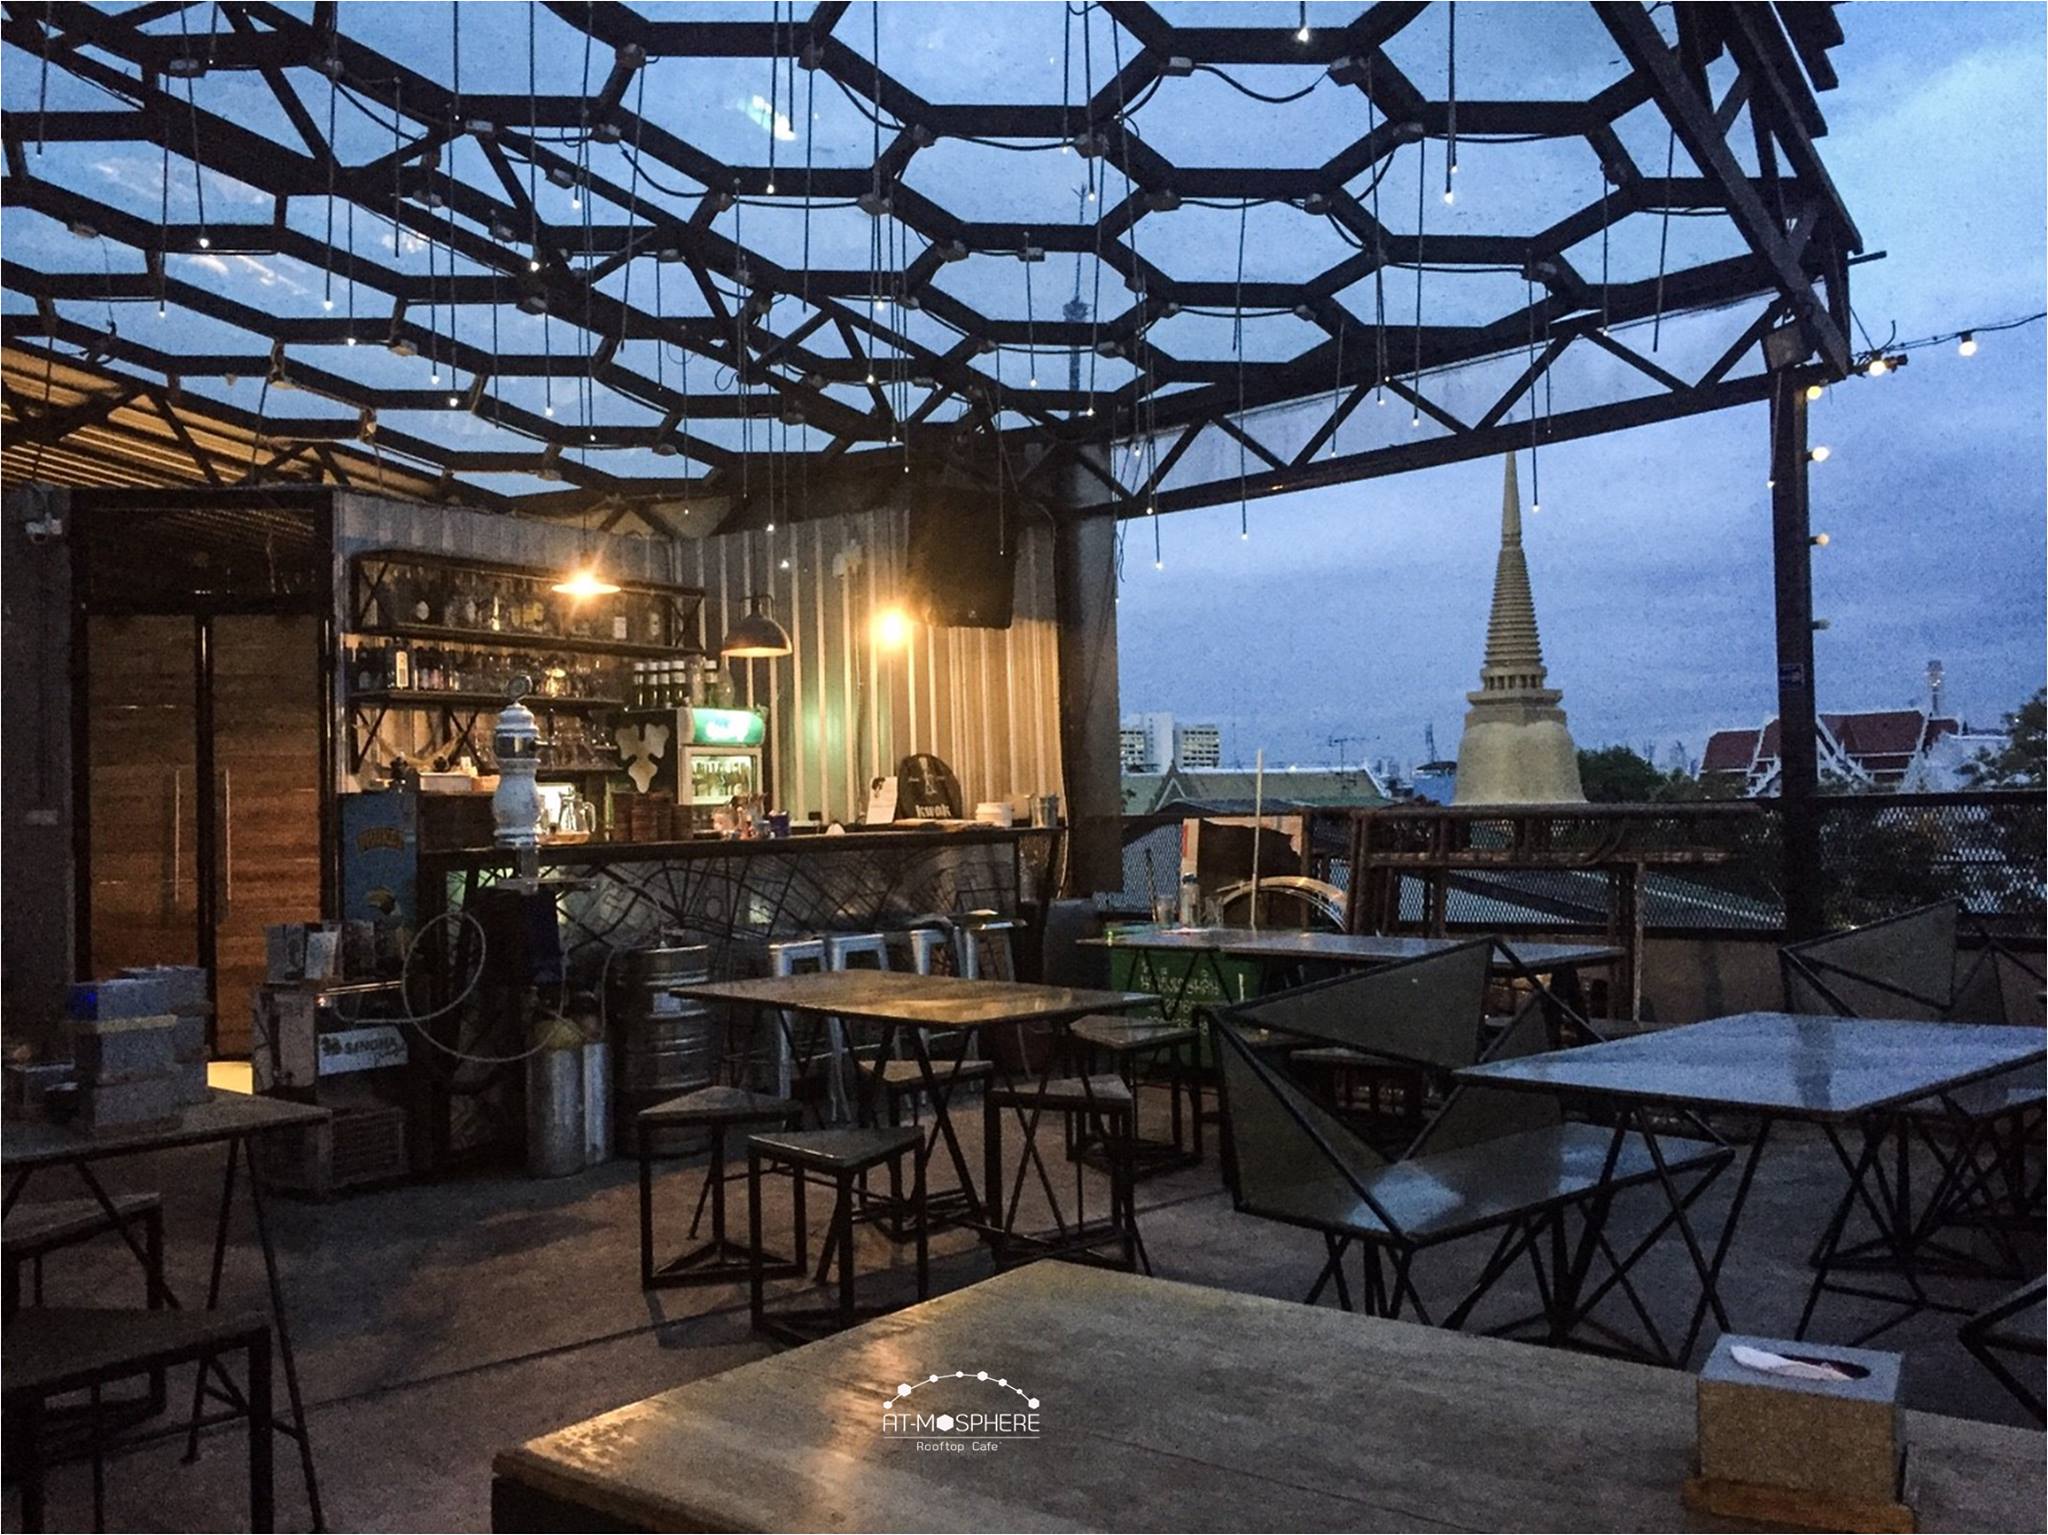 แอทโมสเฟียร์ รูฟท็อป คาเฟ่ (At-Mosphere Rooftop Cafe') : กรุงเทพมหานคร (Bangkok)